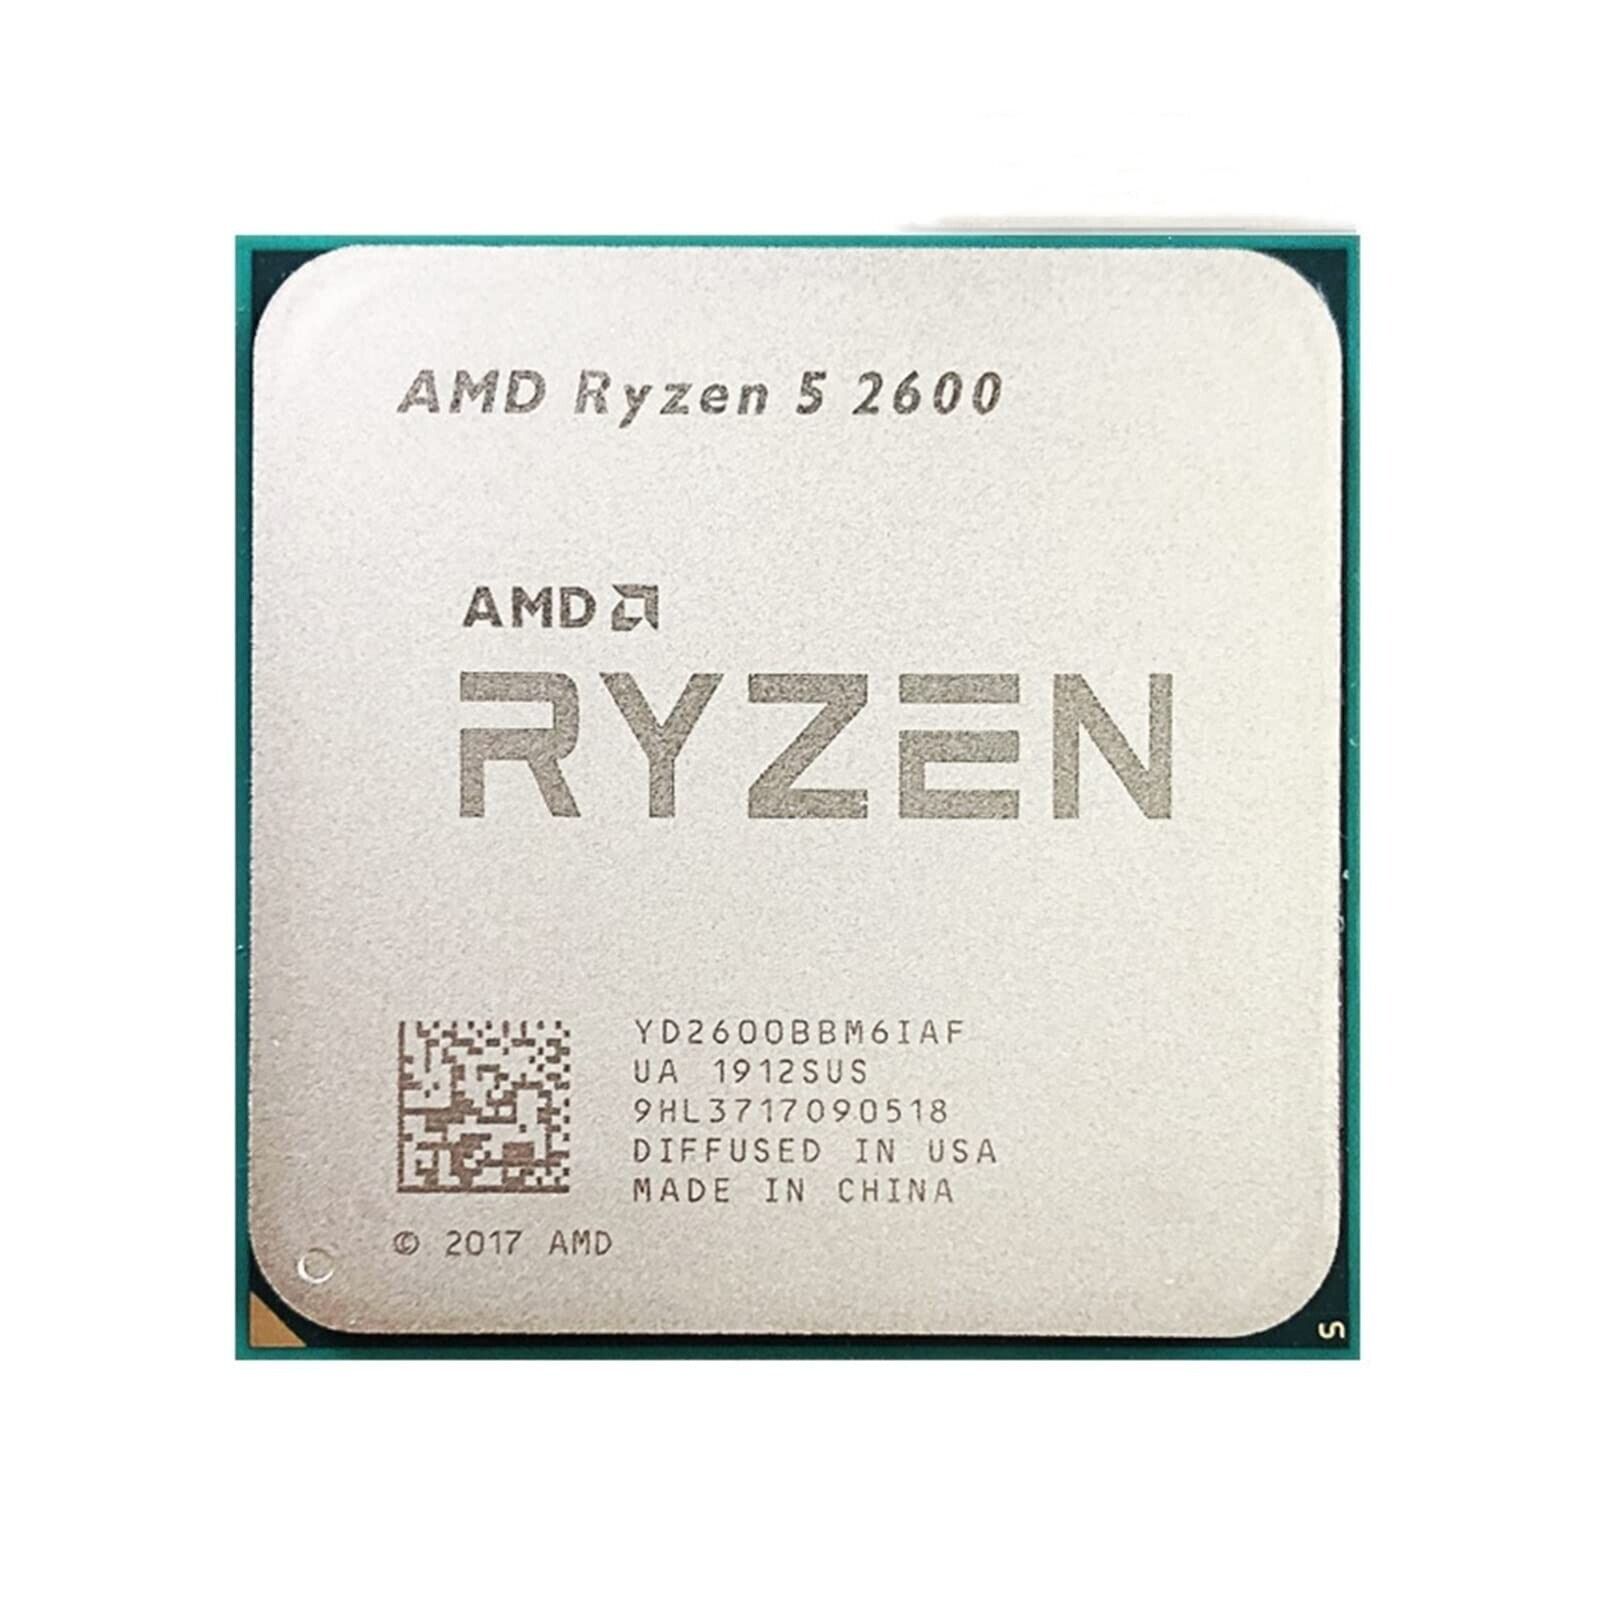 AMD Ryzen 5 2600 - 3.9 GHz Six Core (YD2600BBM6IAF) Processor